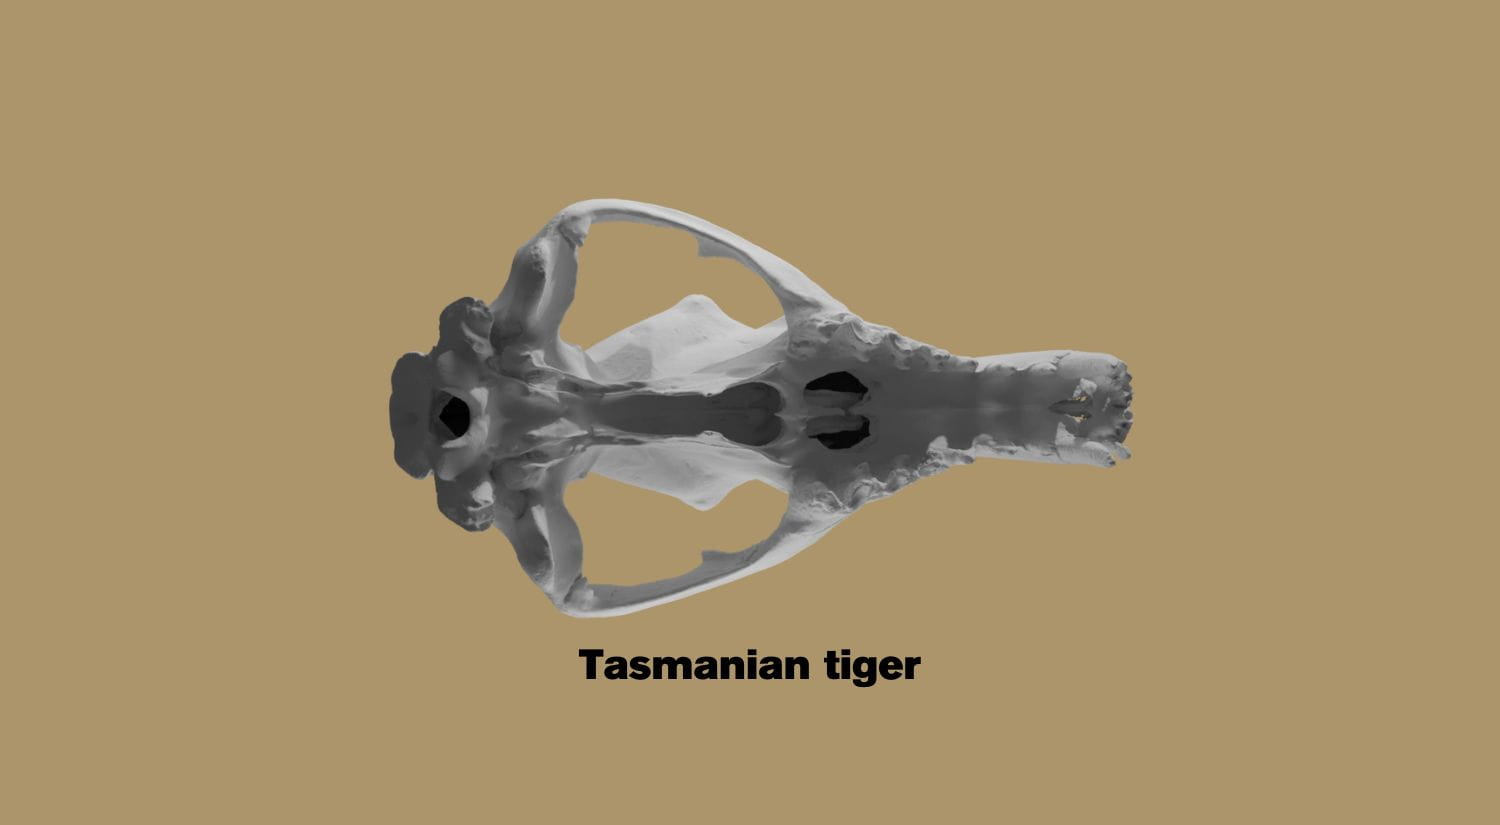 A Tasmanian Tiger